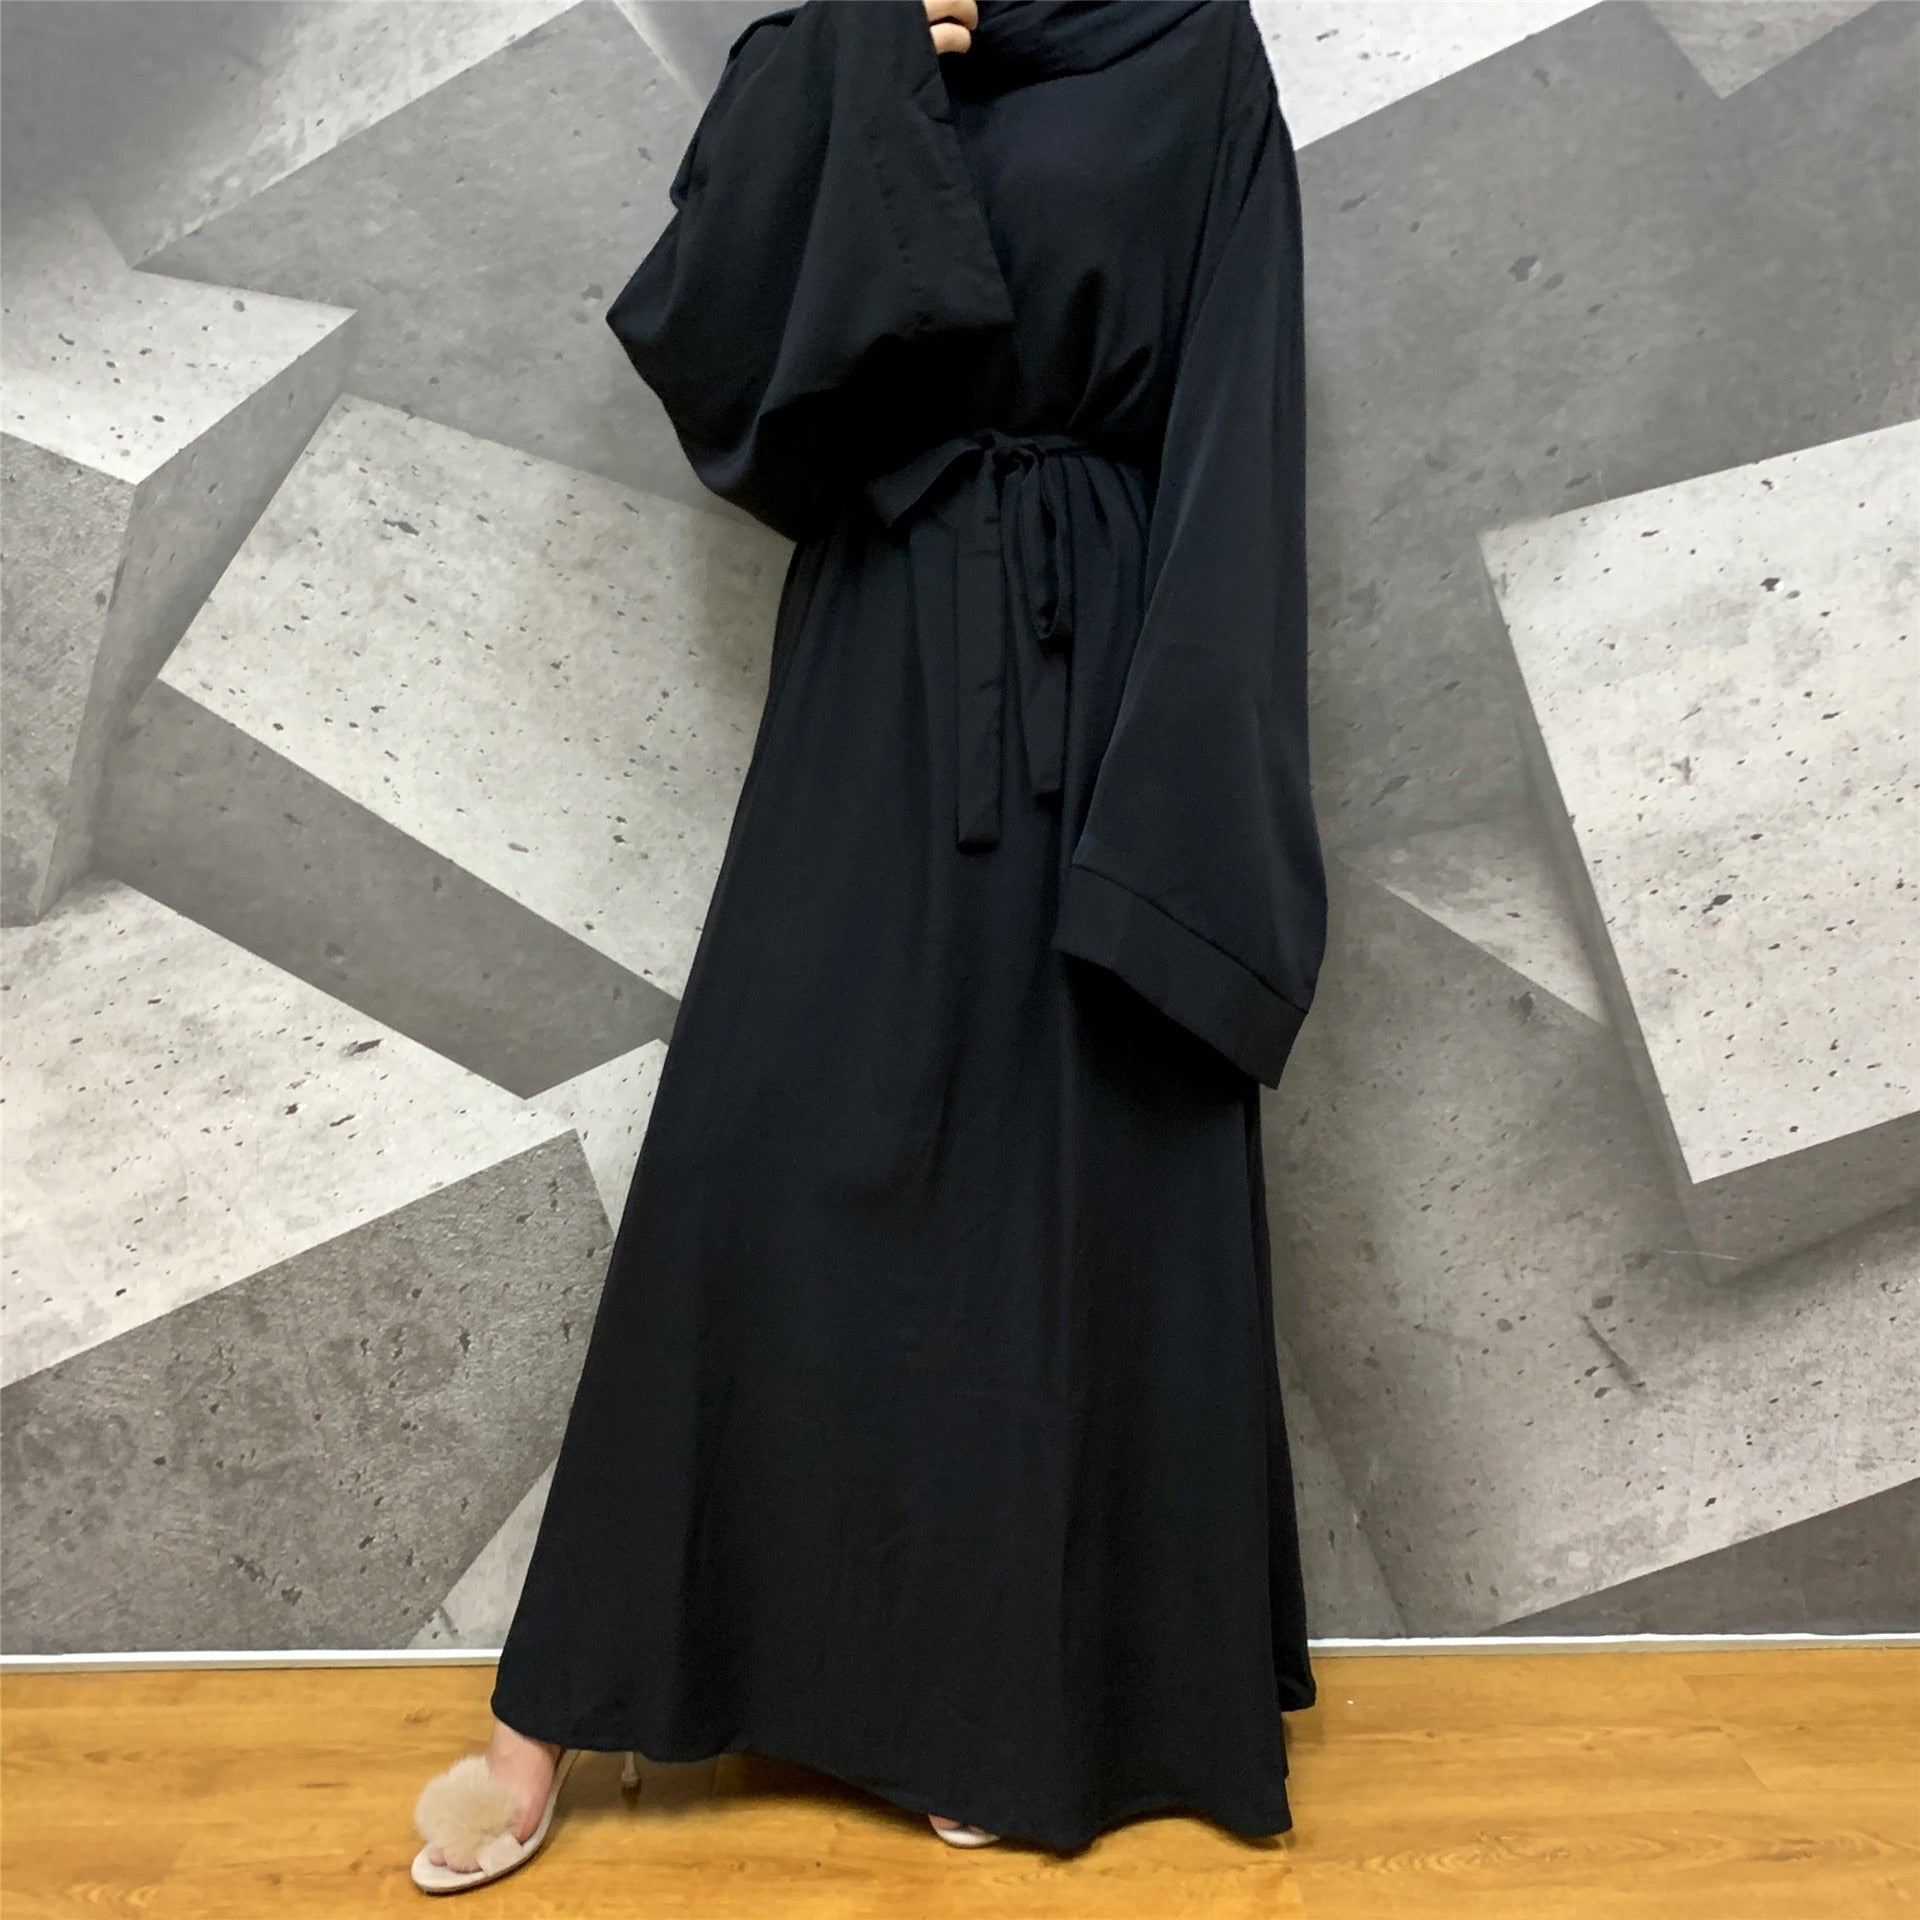 Muslim Fashion Hijab